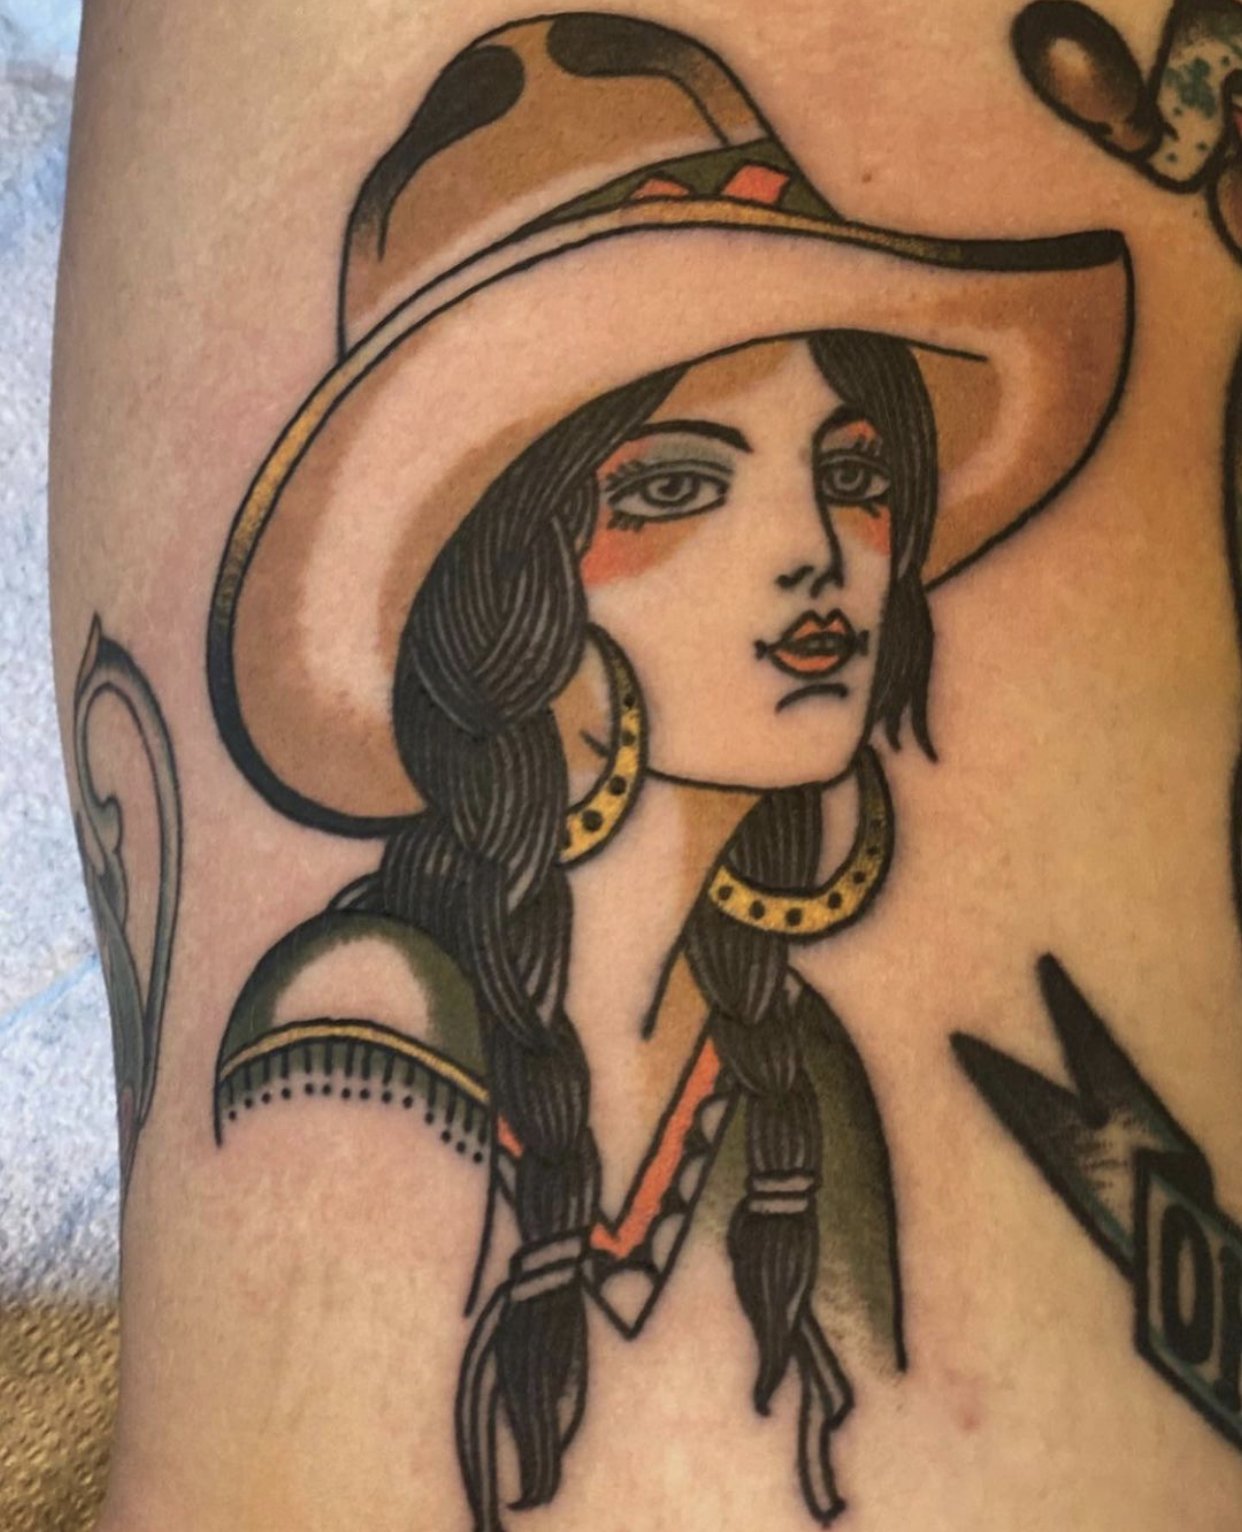 Cowgirl tattoo by Matt at Remington tattoo in San Diego CA  rtattoo